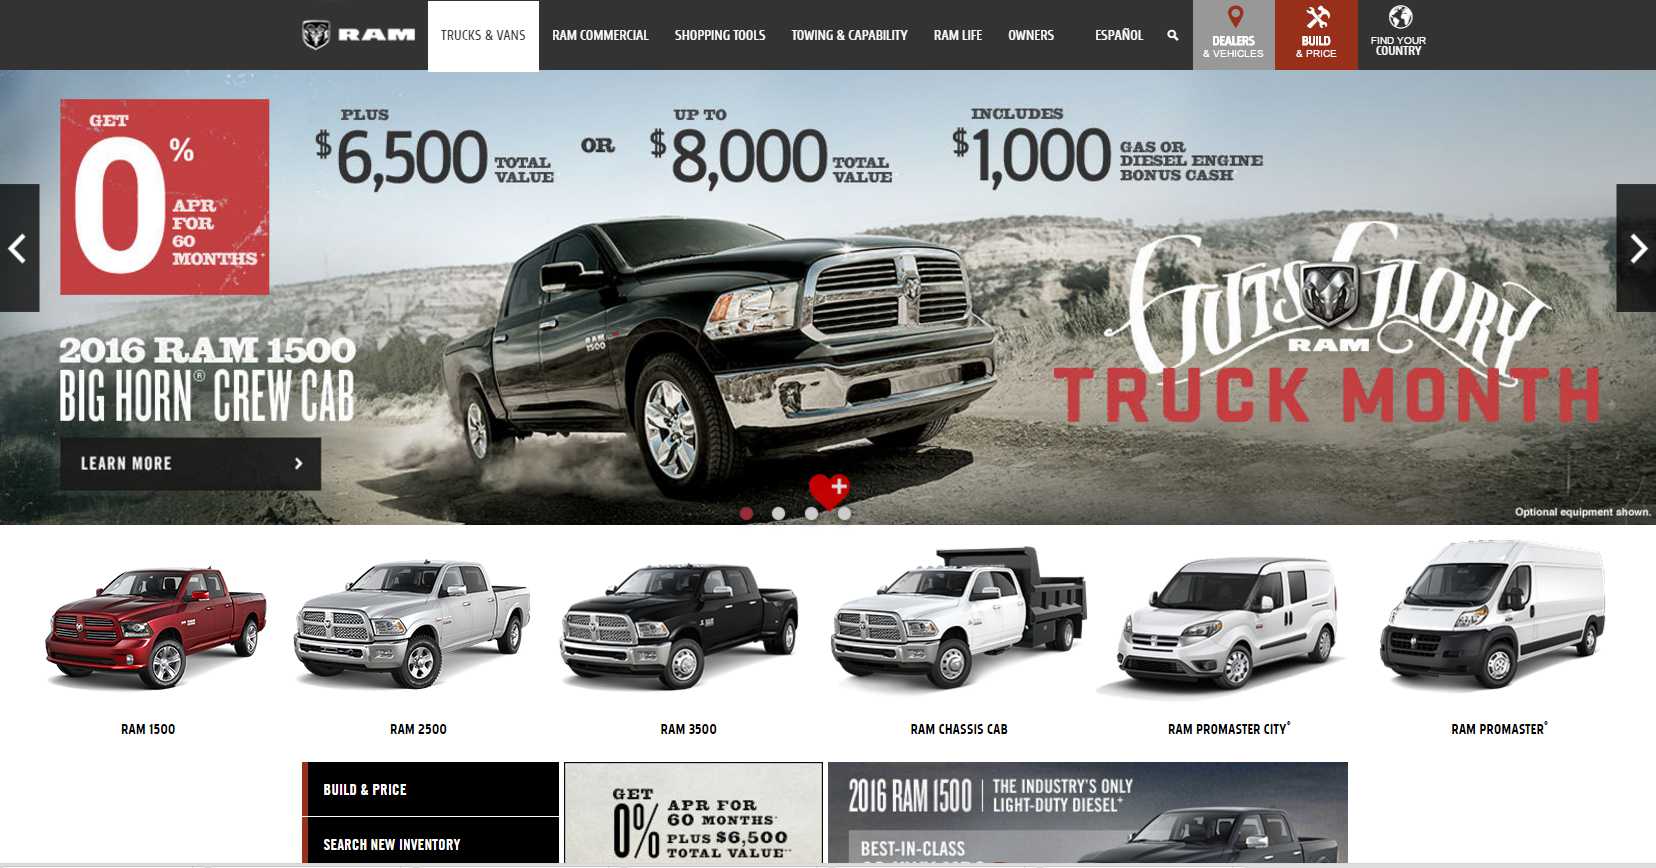 Ram Trucks a webpage design preferred by men